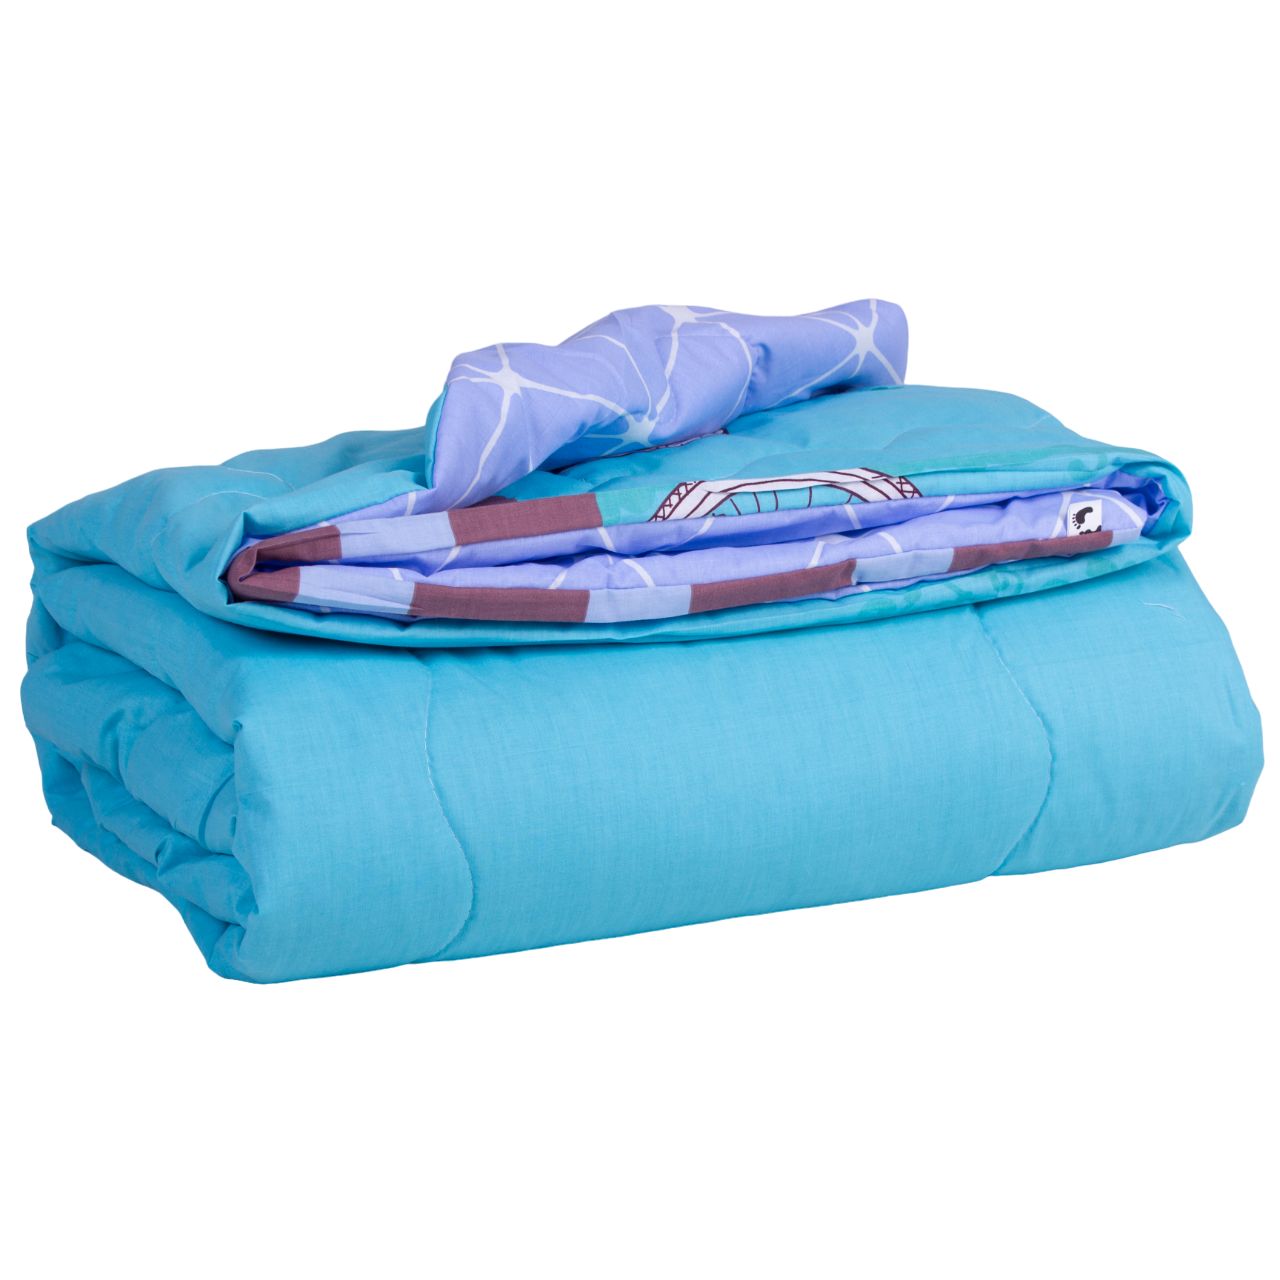 Одеяло хлопковое MirSon Летнее №2812 Сolor Fun Line Alta, полуторное, 205х140 см, голубое (2200006685630) - фото 2